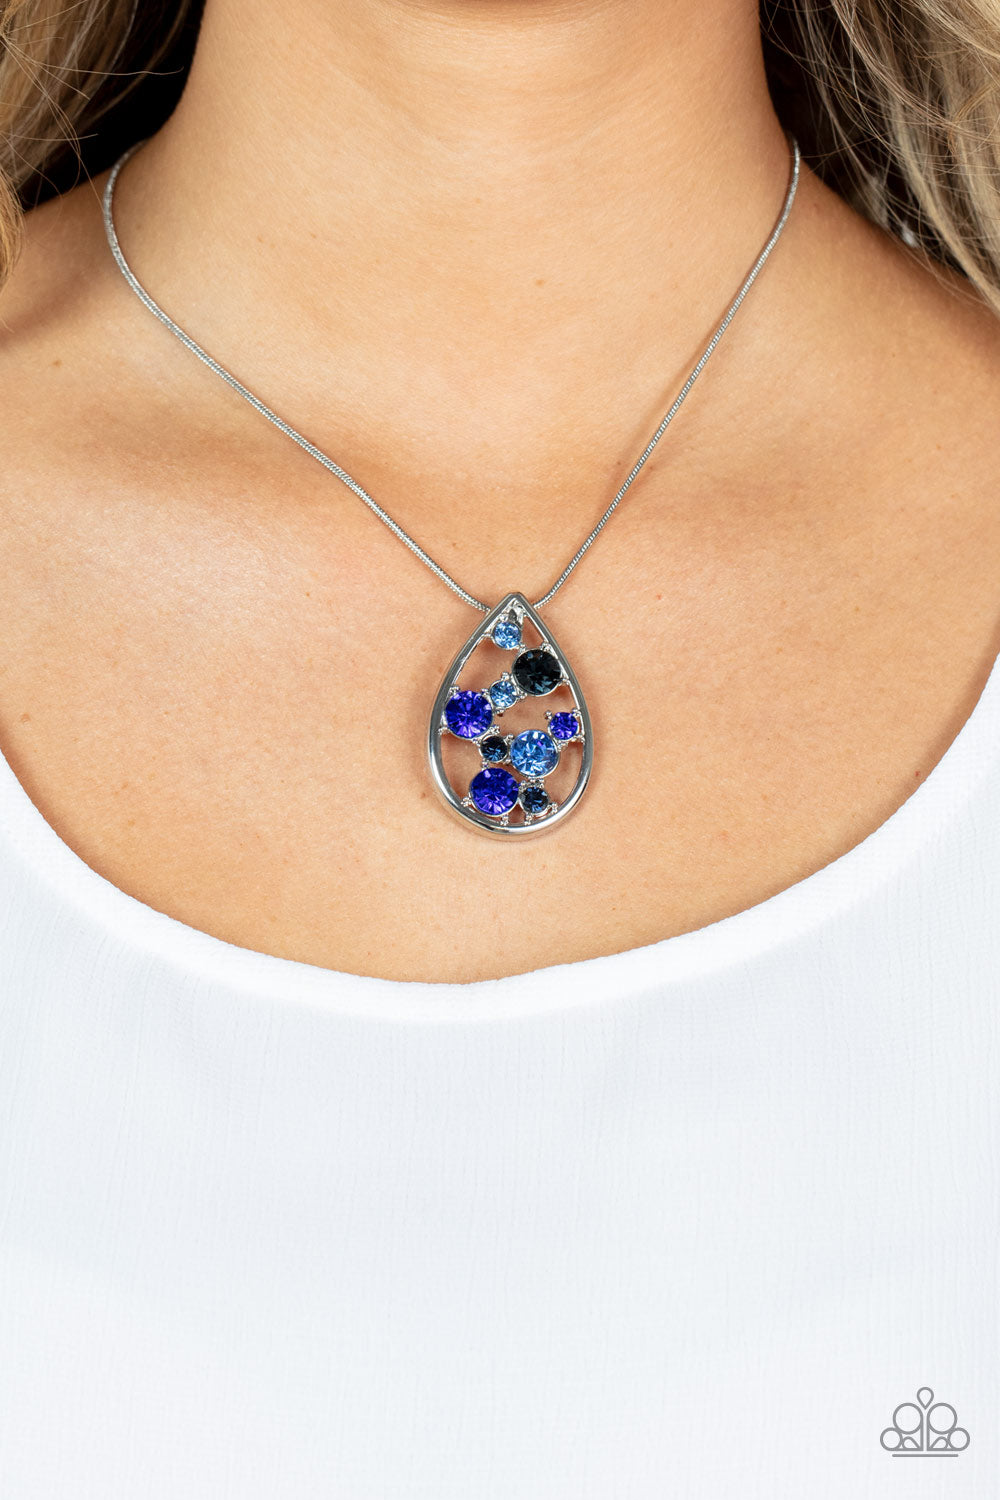 Seasonal Sophistication - Blue Floating Rhinestone Pendant Paparazzi Necklace & matching earrings